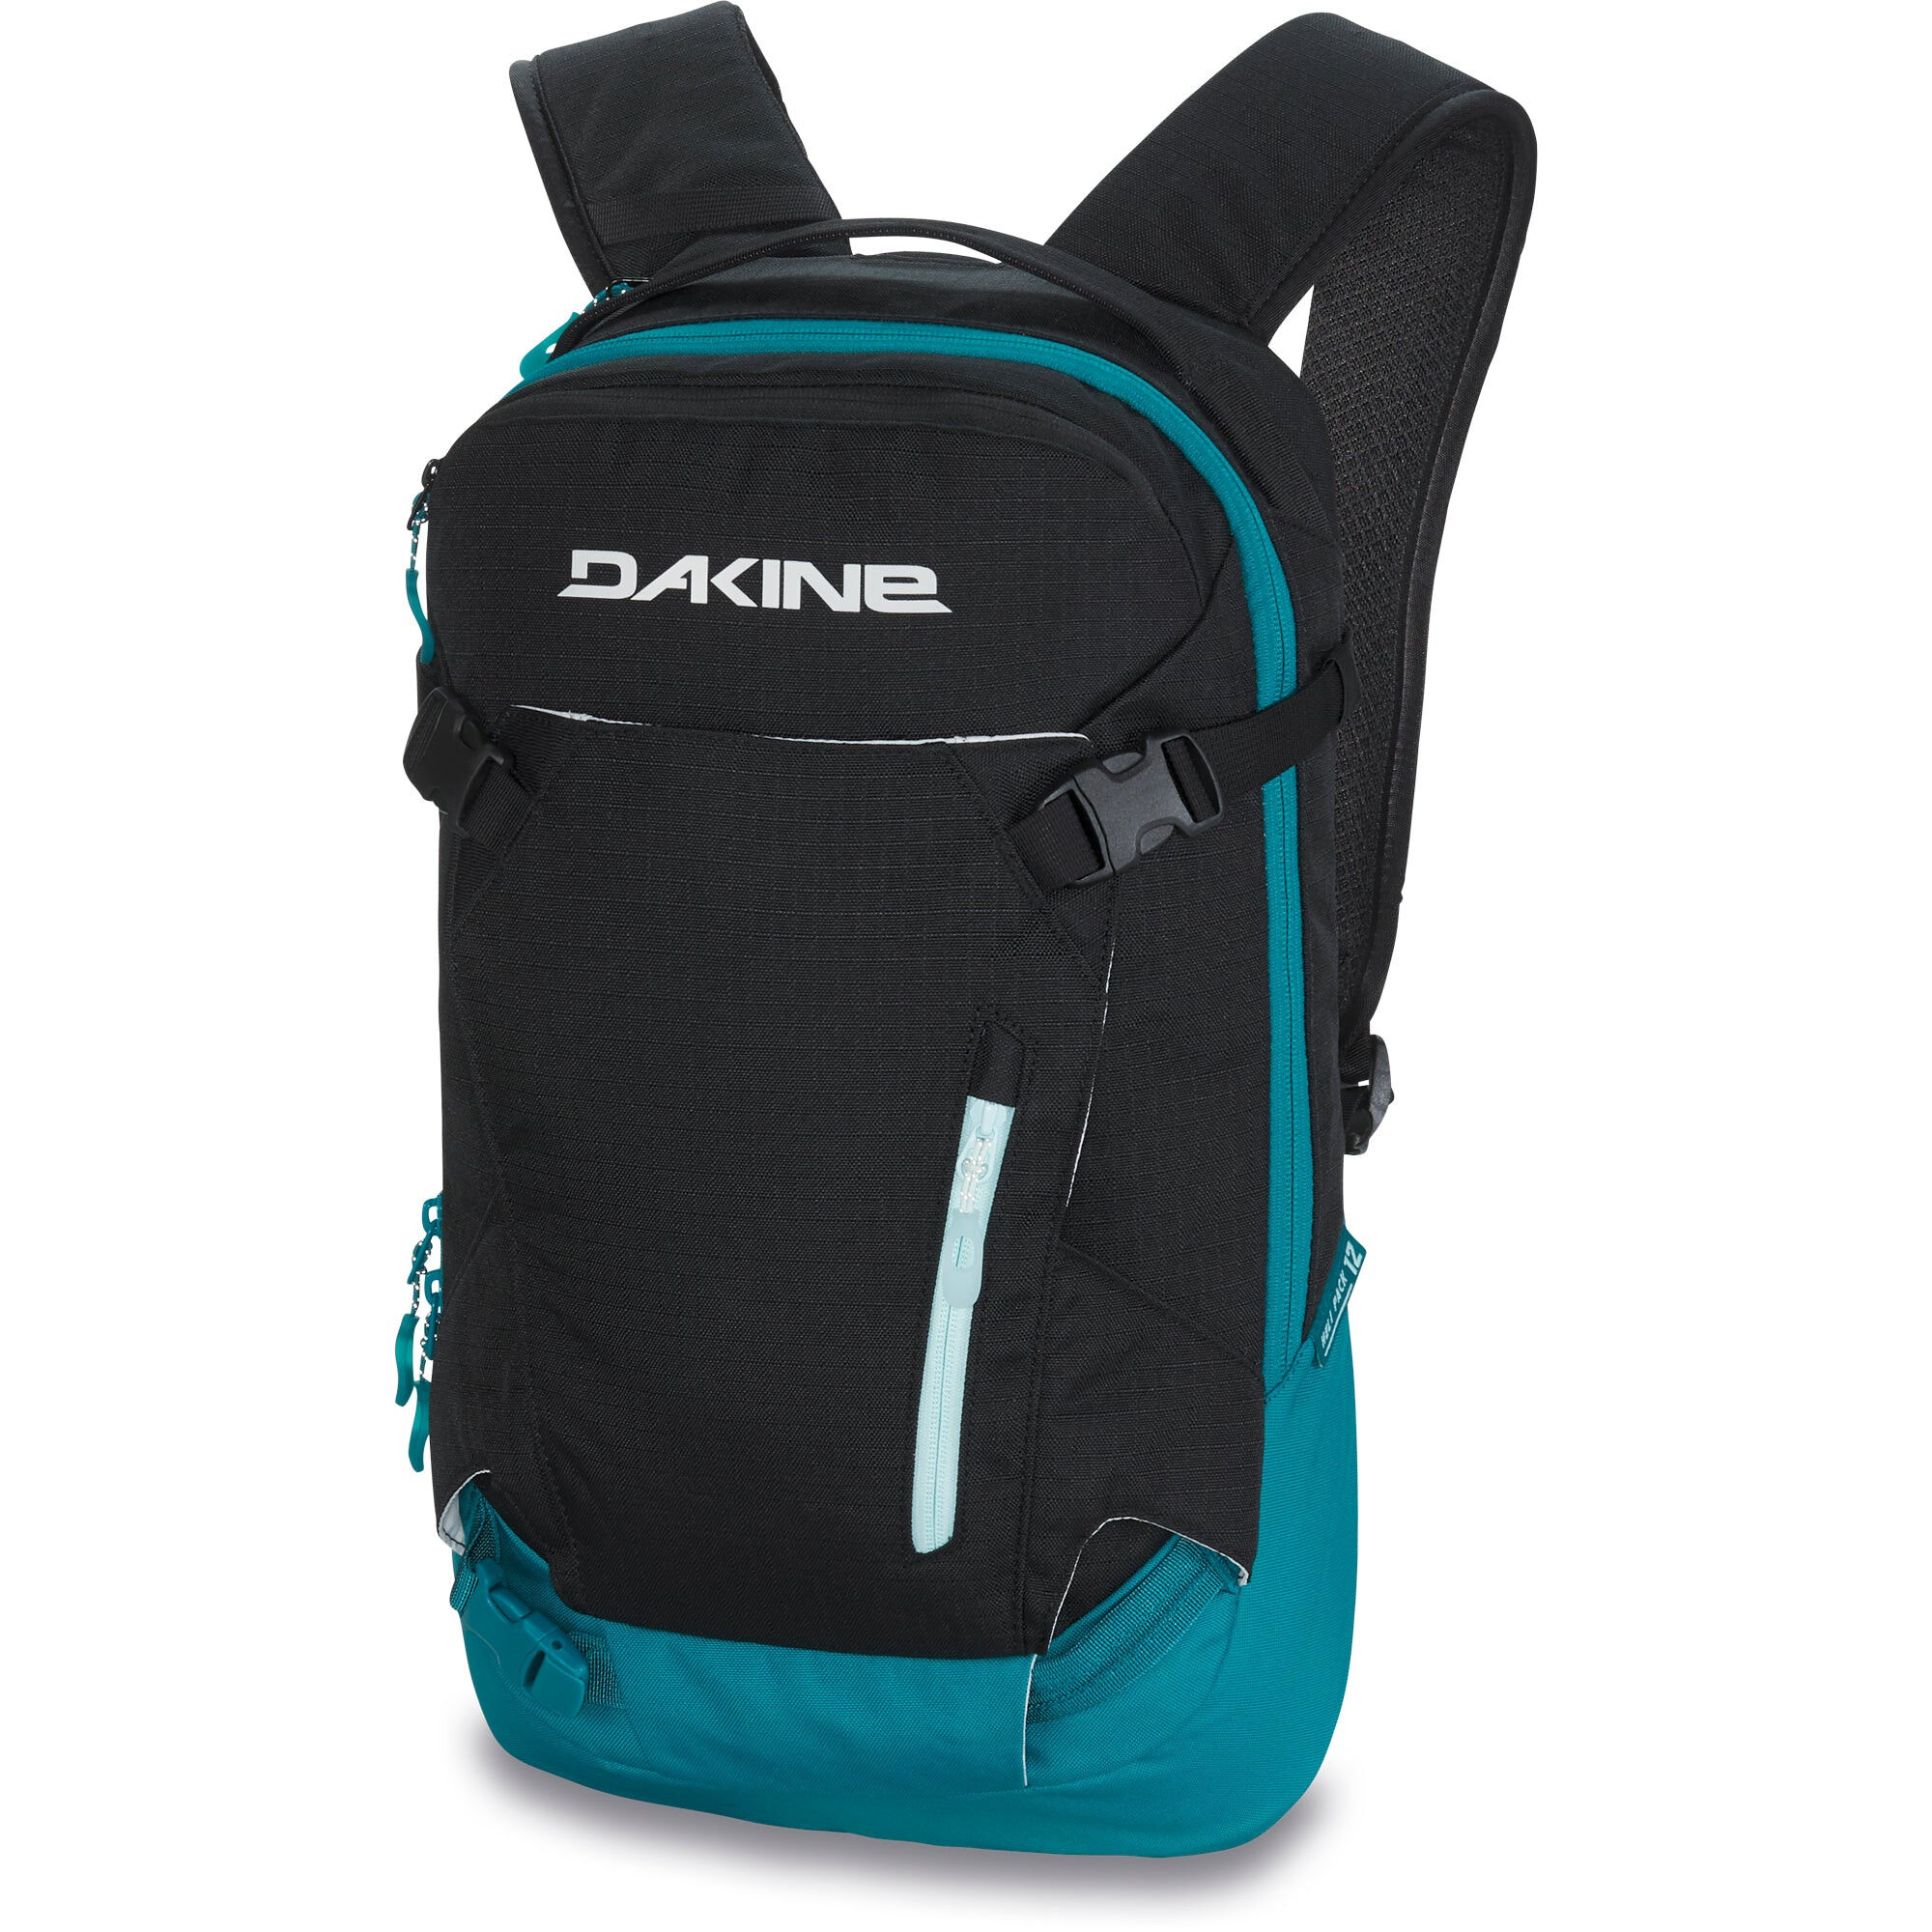 Dakine Heli Pack 12L - Ski backpack - Women's